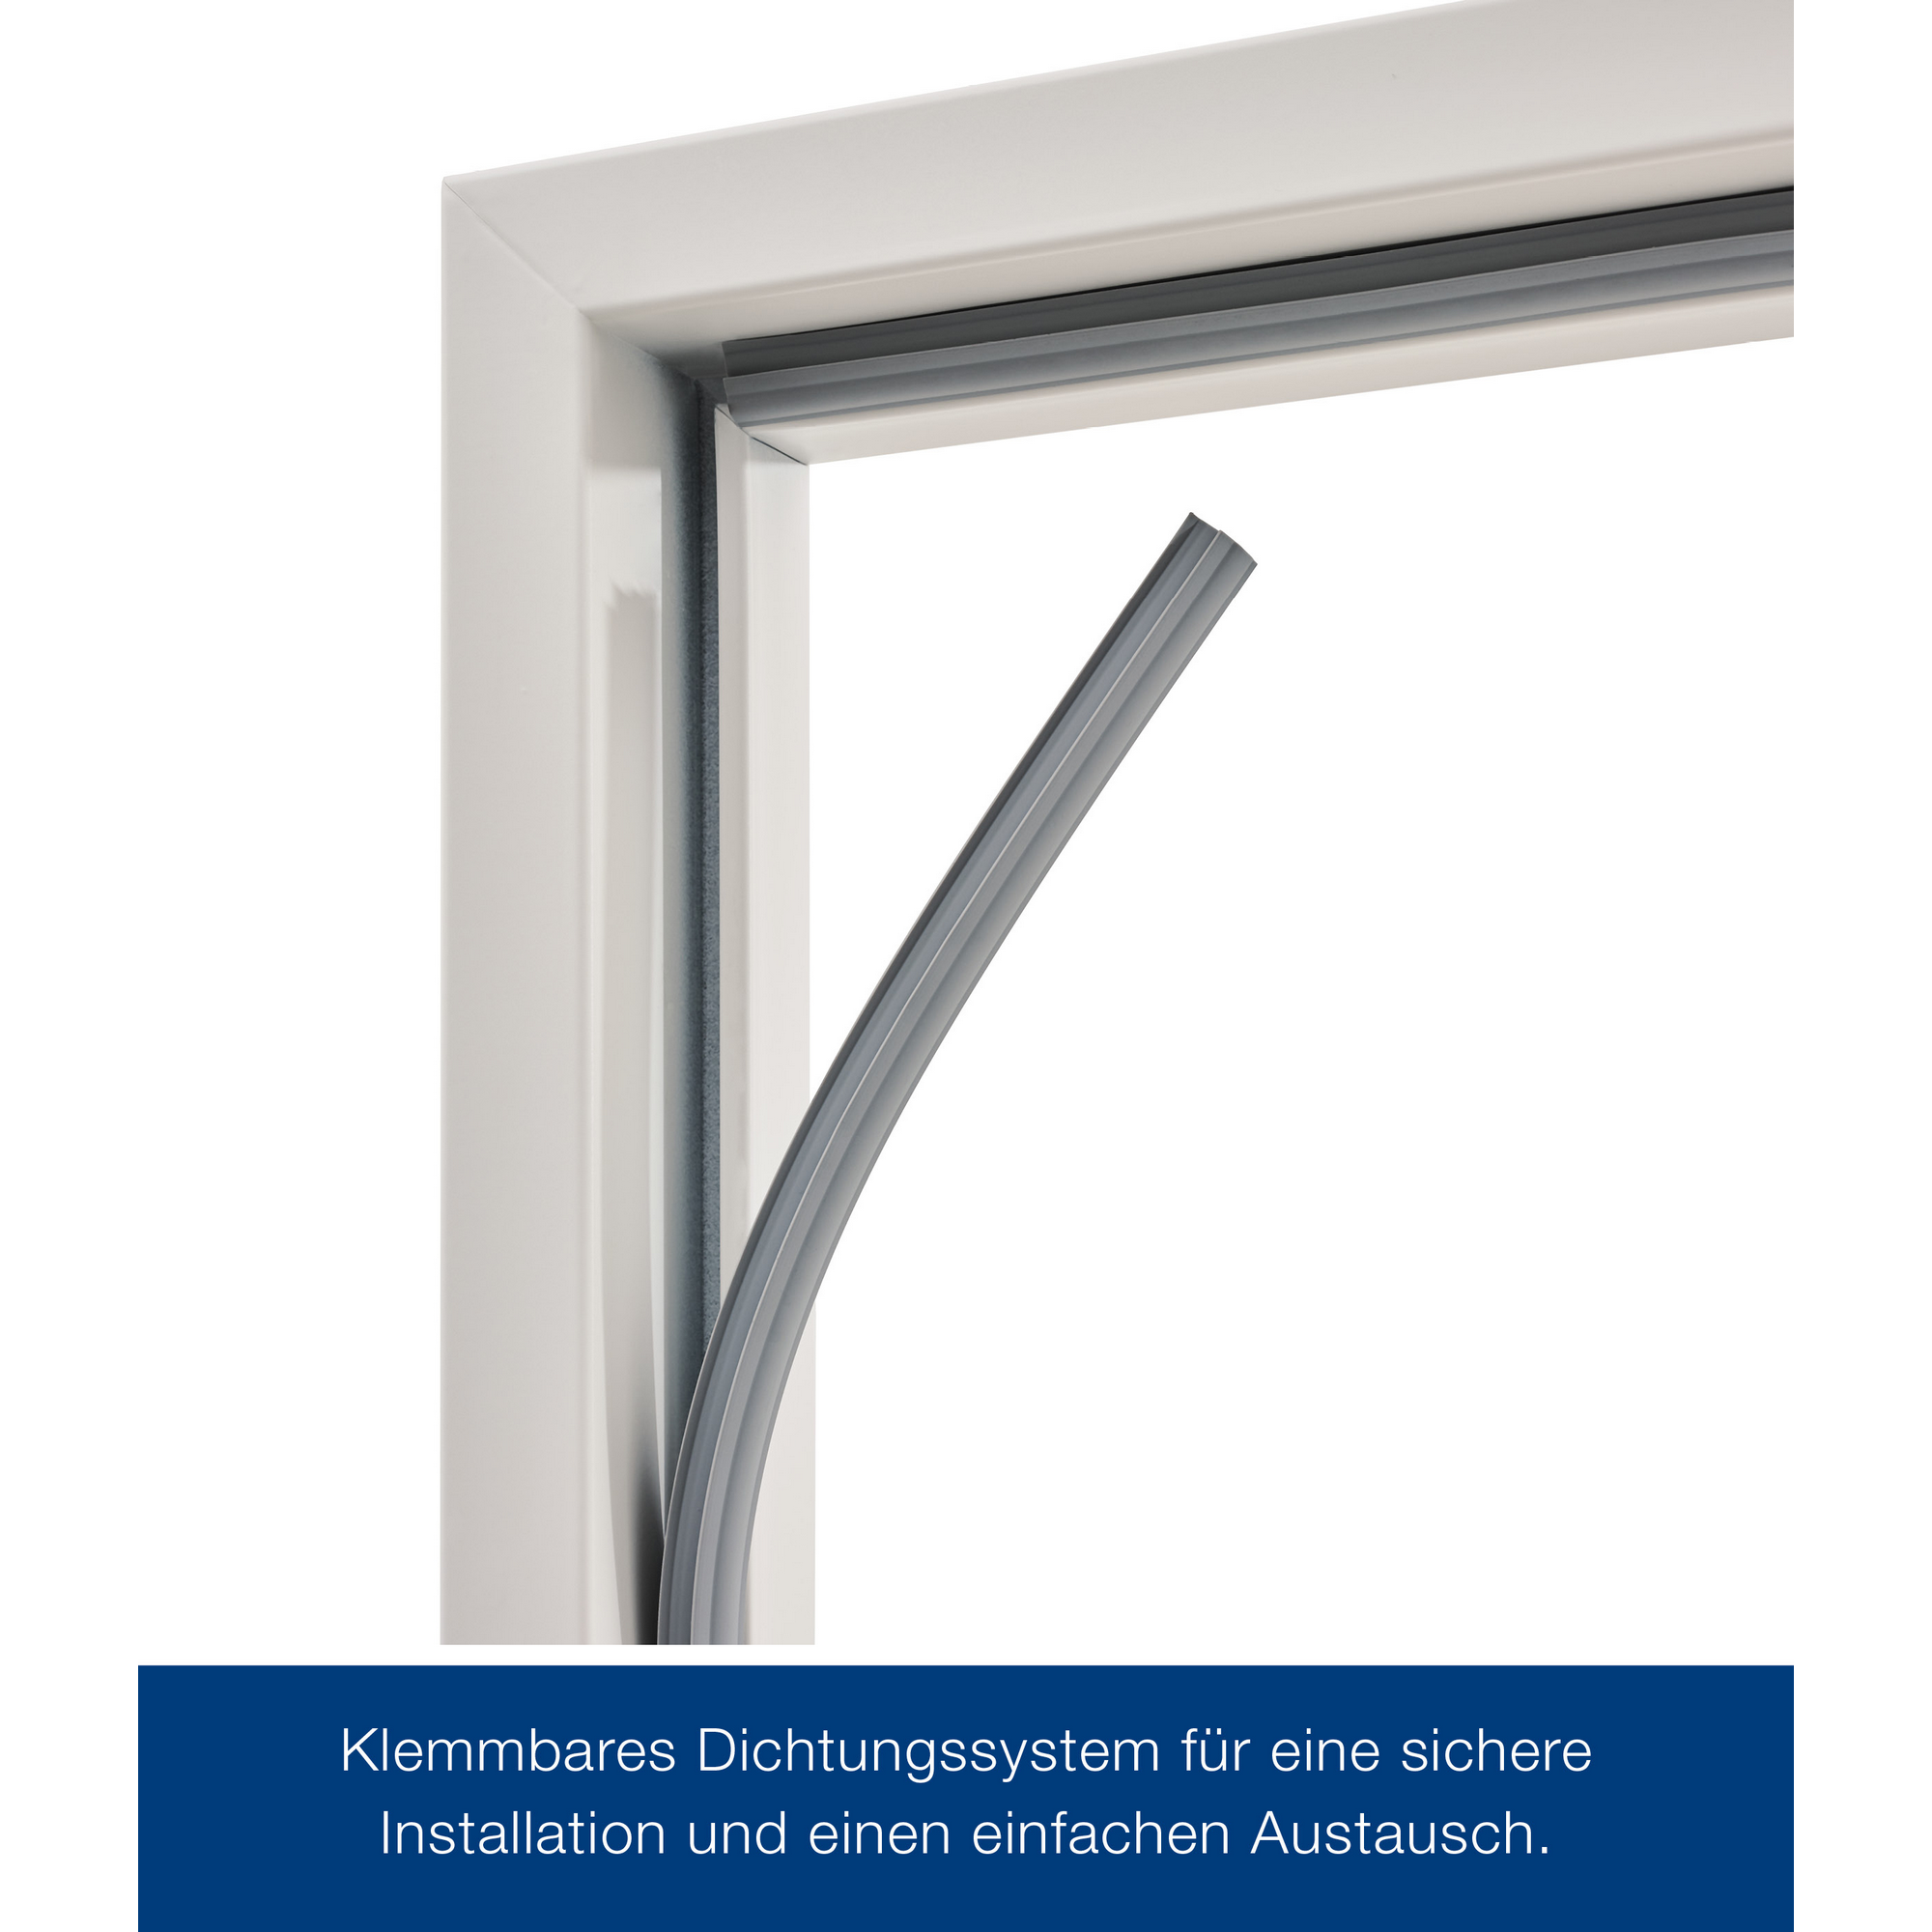 ZK-Innentür-Element Anschlag rechts weiß 75 x 200 cm + product picture